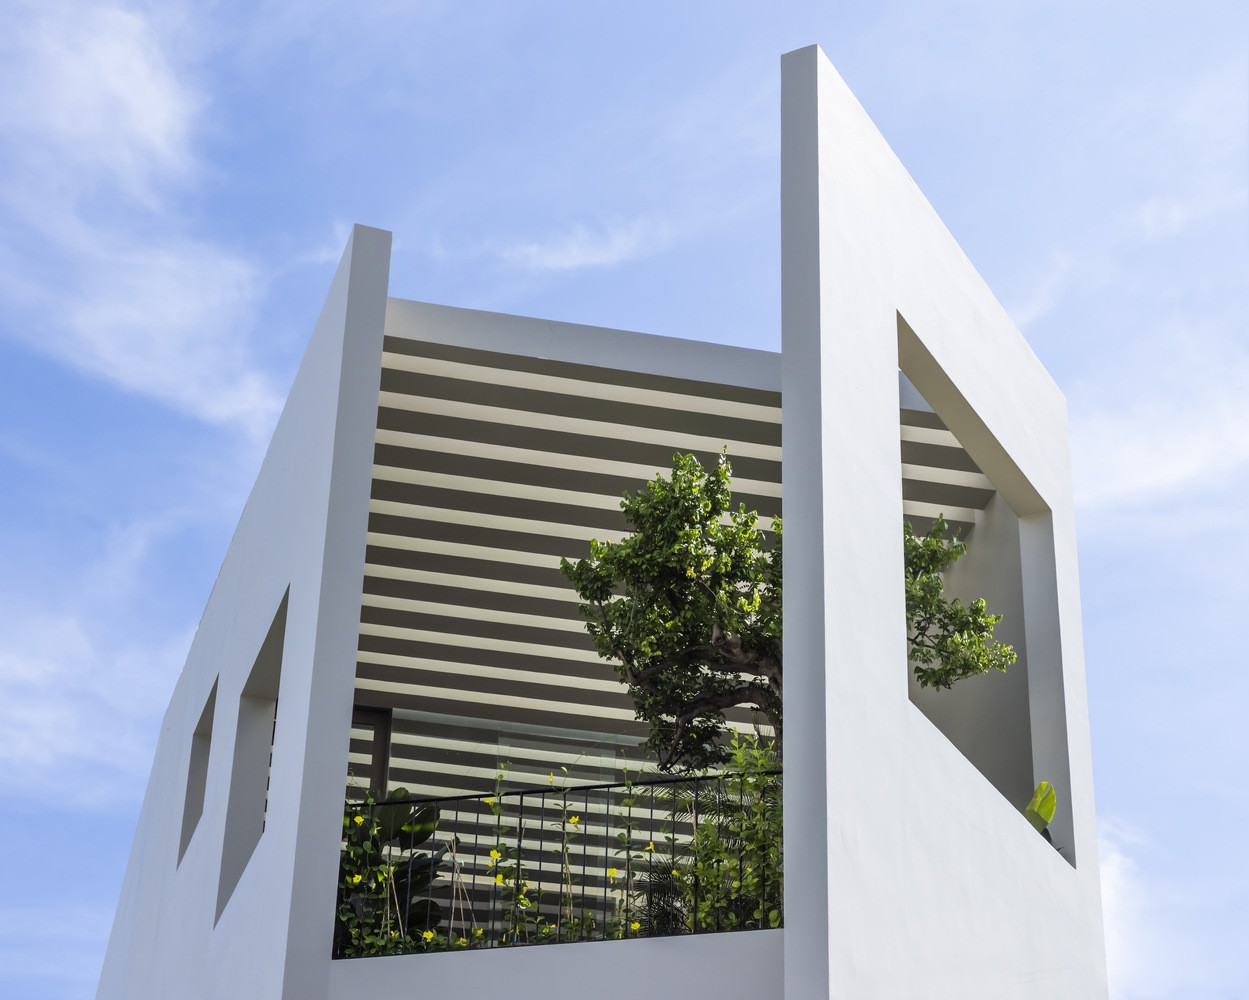 Với nhiều giải pháp kiến trúc xanh trong thiết kế hiện đại, SkyGarden House là không gian sống lý tưởng trong môi trường đô thị đông đúc.